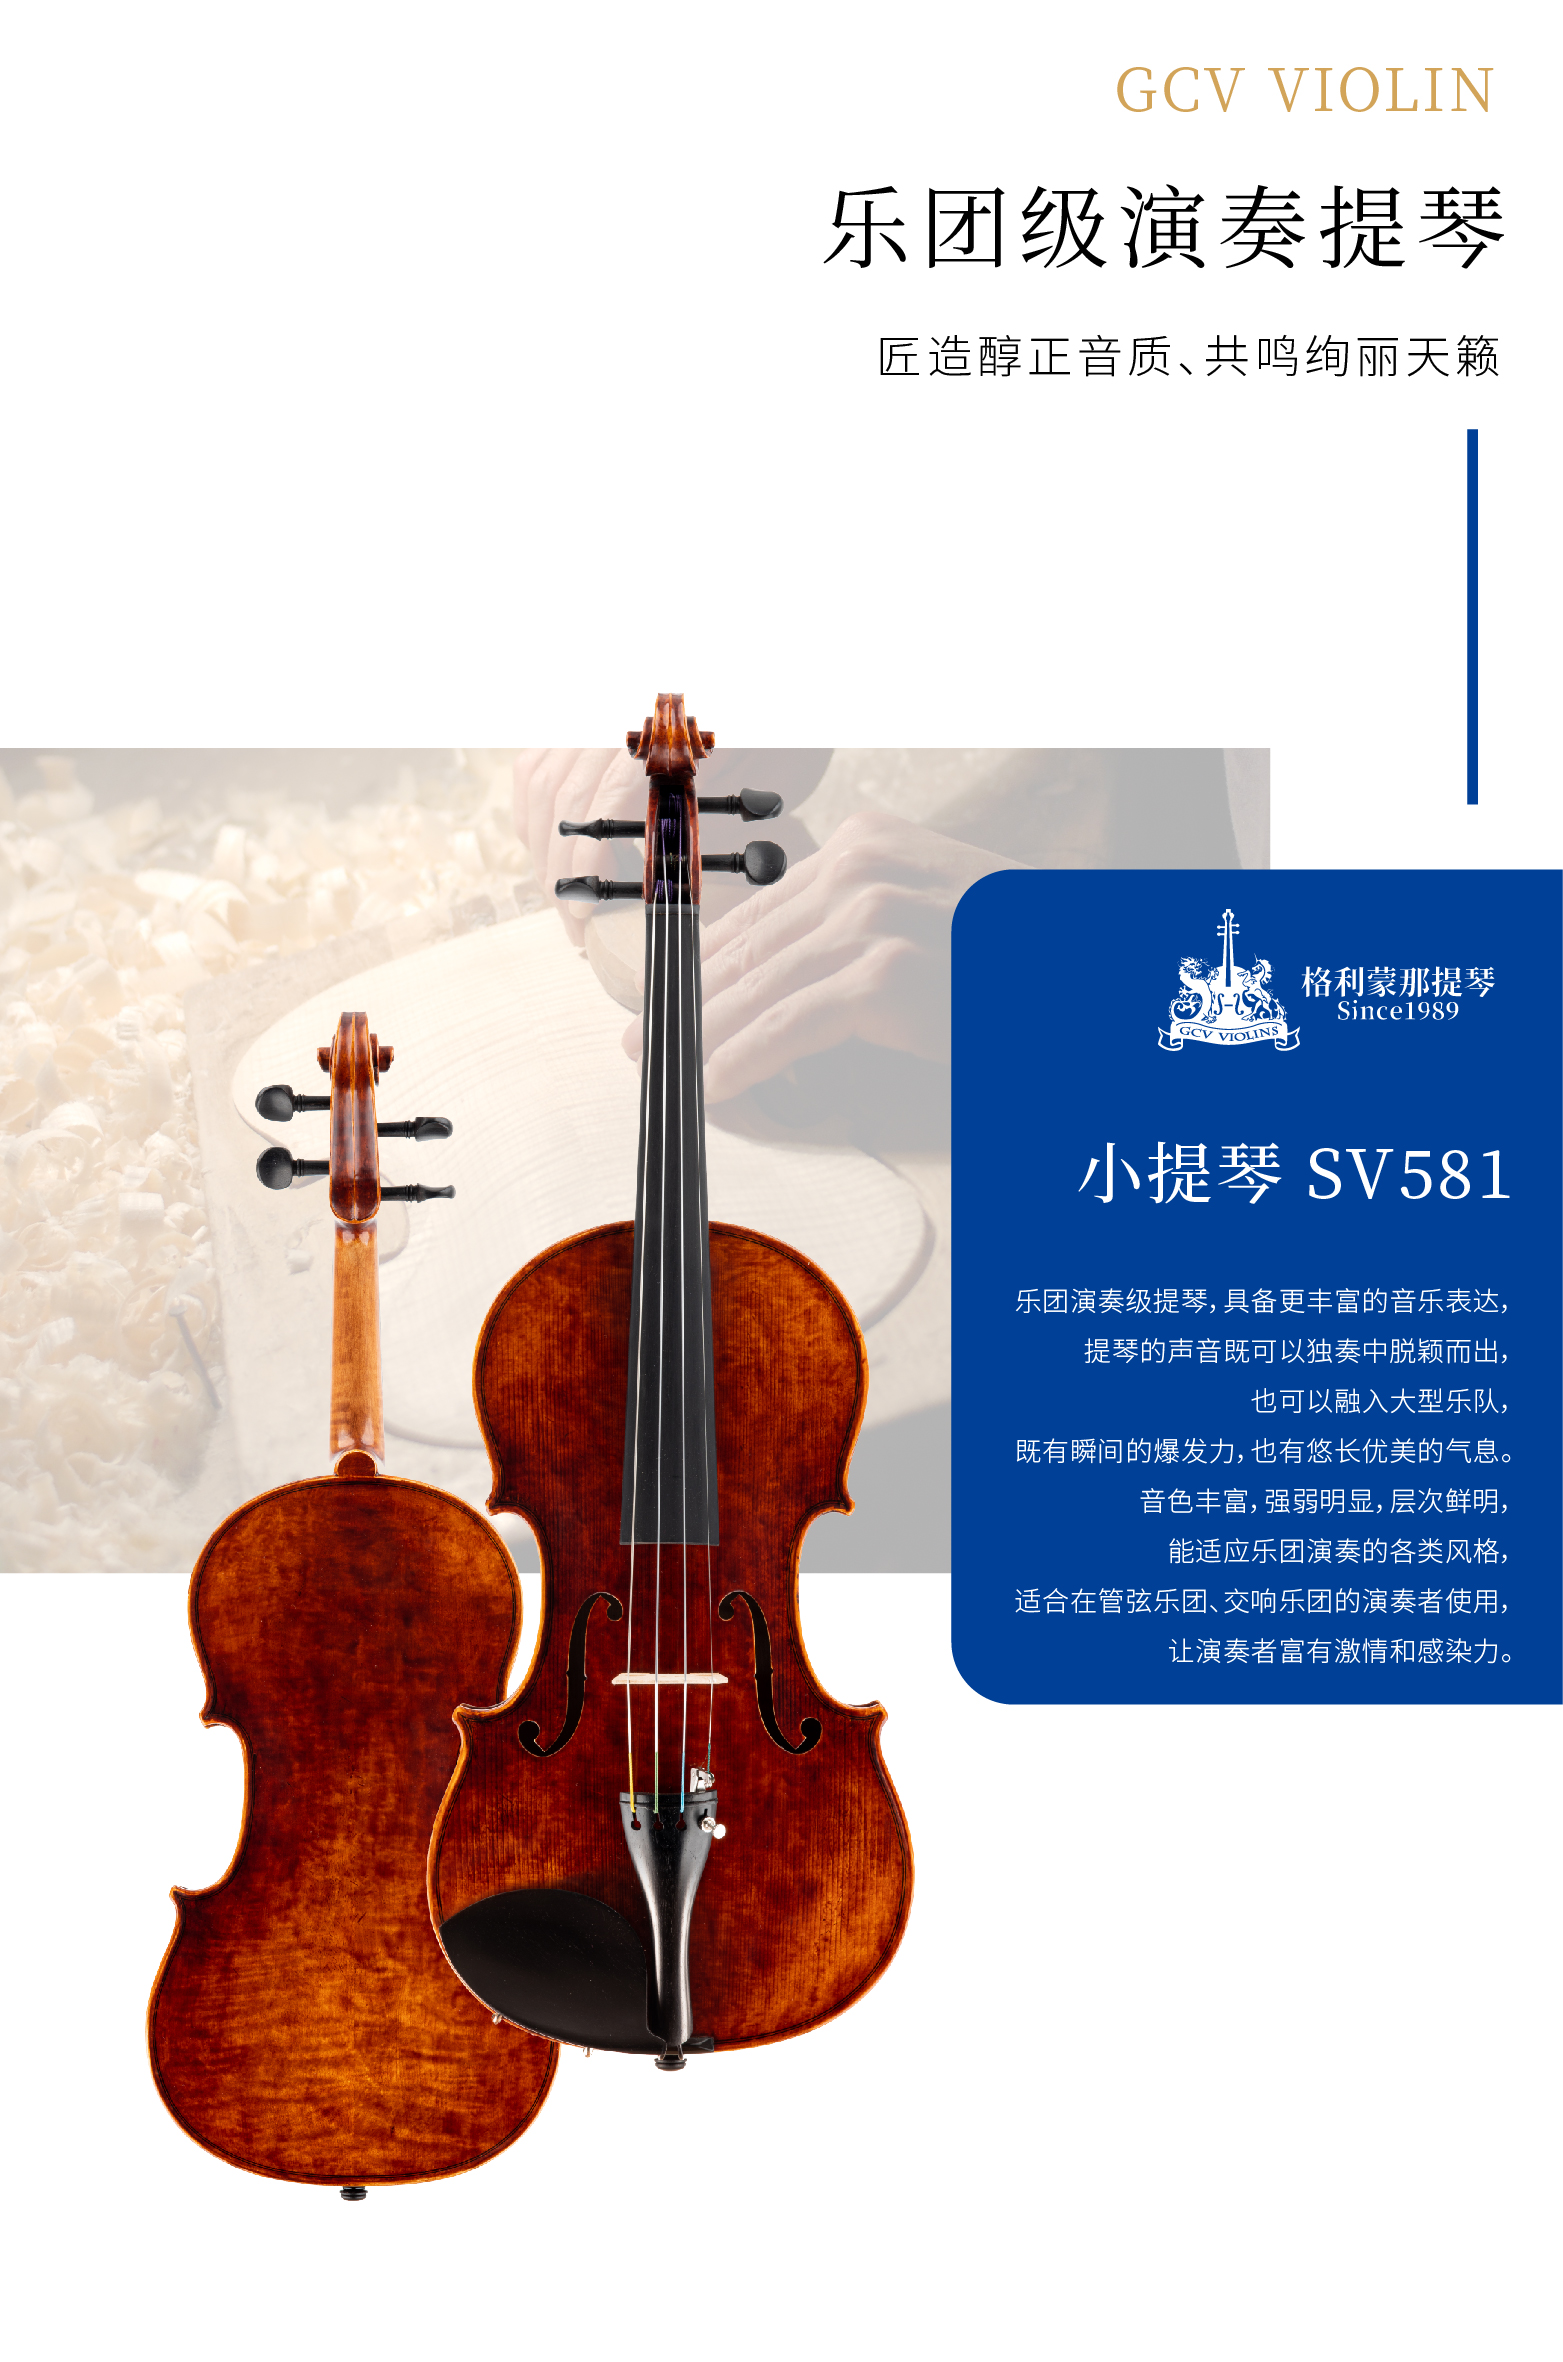 熙珑乐器专营店-详情-v1-2_SV581小提琴_02.png